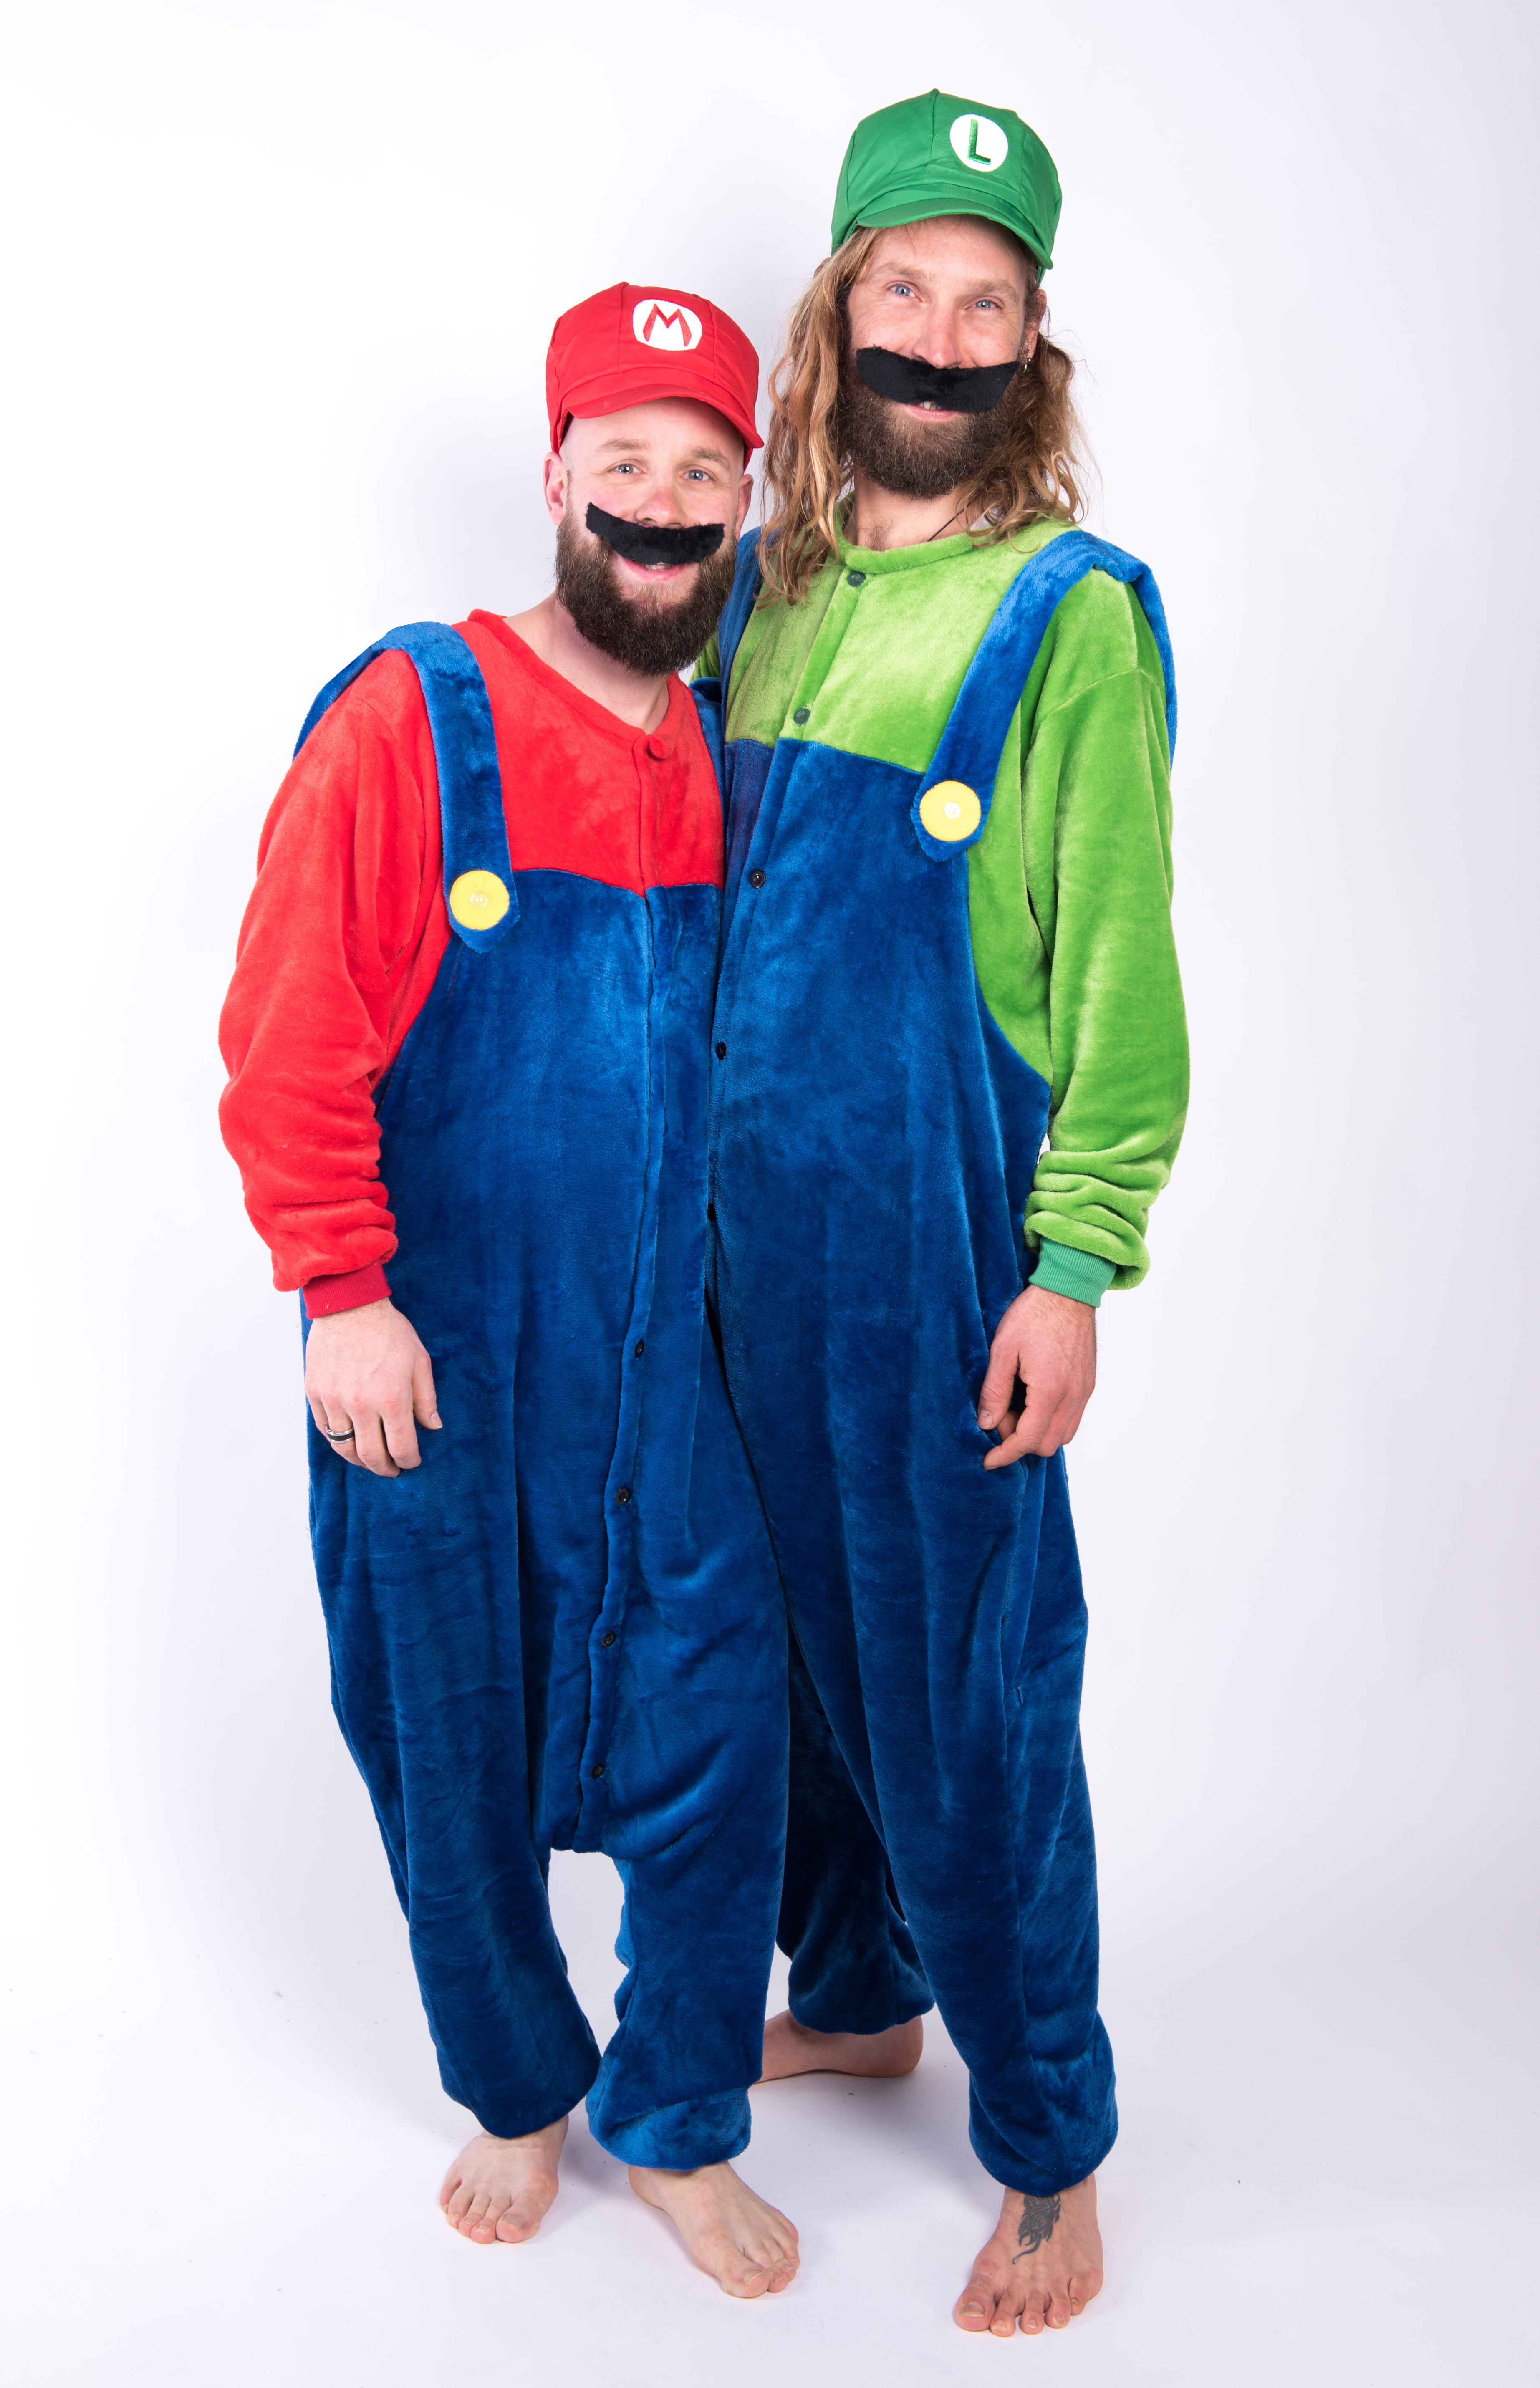 Beven Lounge optellen Super Mario onesie kostuum pak kopen? Vanaf €29,95 - FeestinjeBeest.nl!